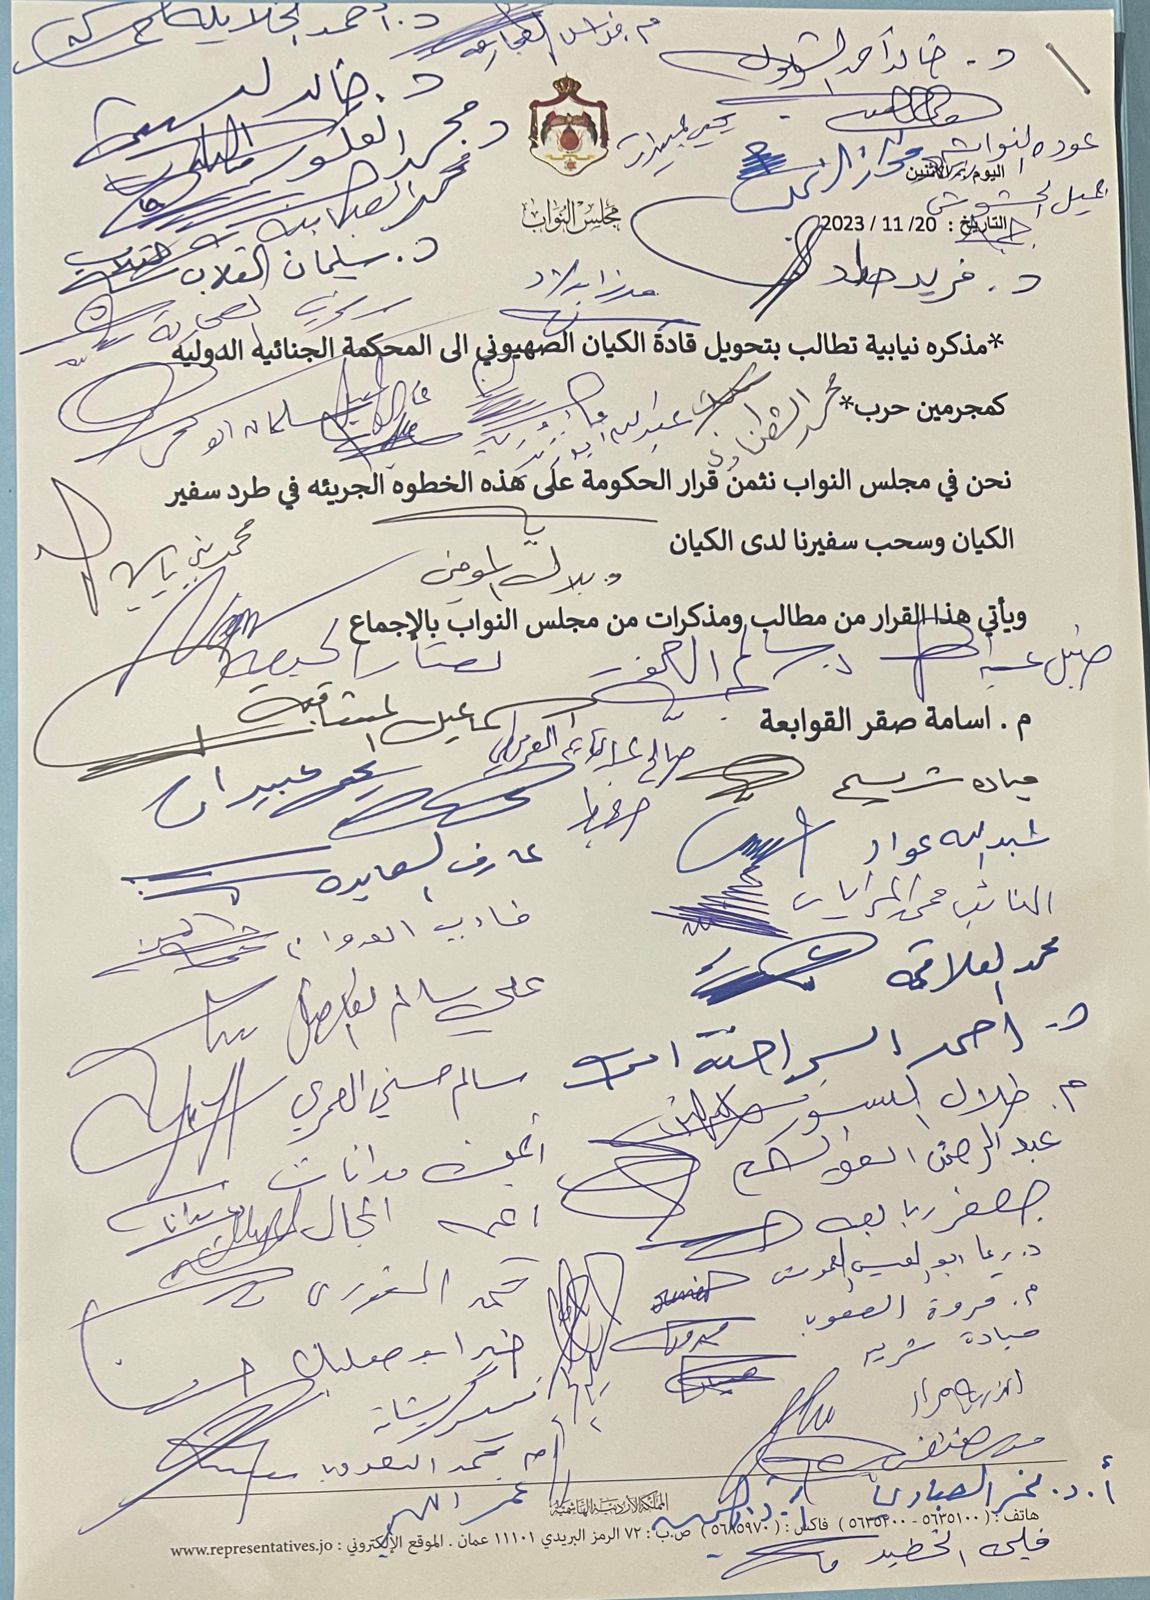 مذكرة نيابية تطالب بتحويل قادة الكيان الصهيوني للمحكمة الجنائية الدولية 